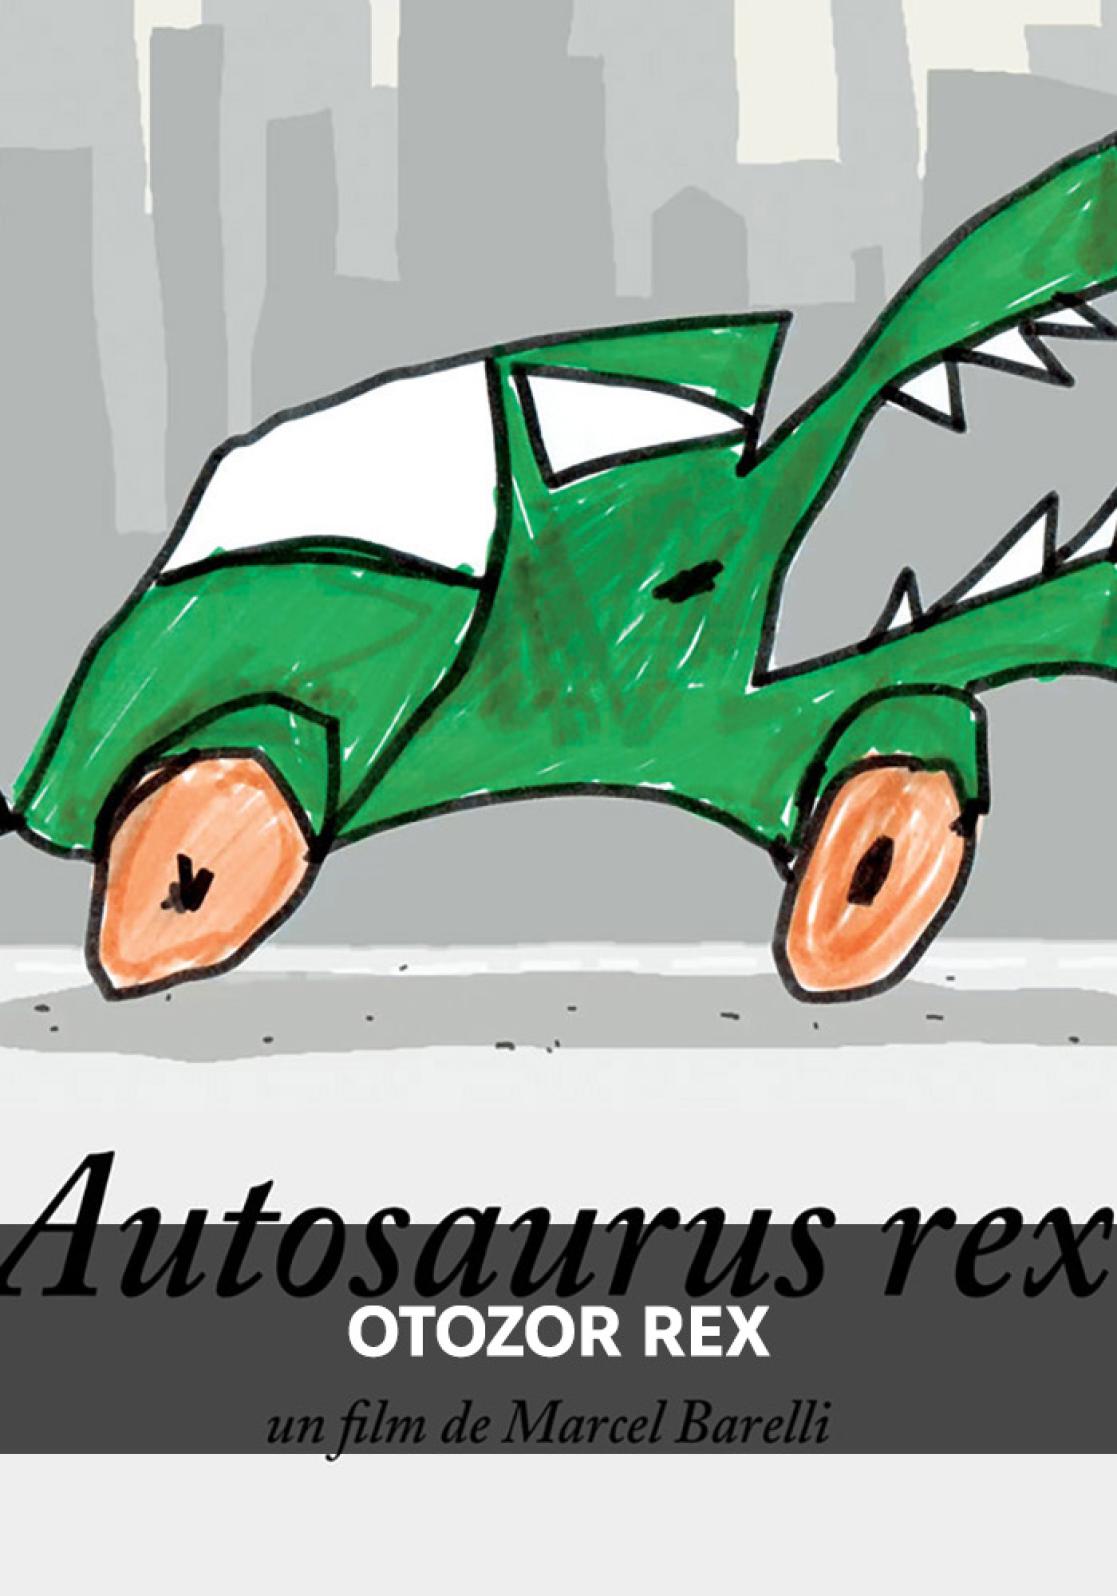 Autosaurus-poster resized turkce